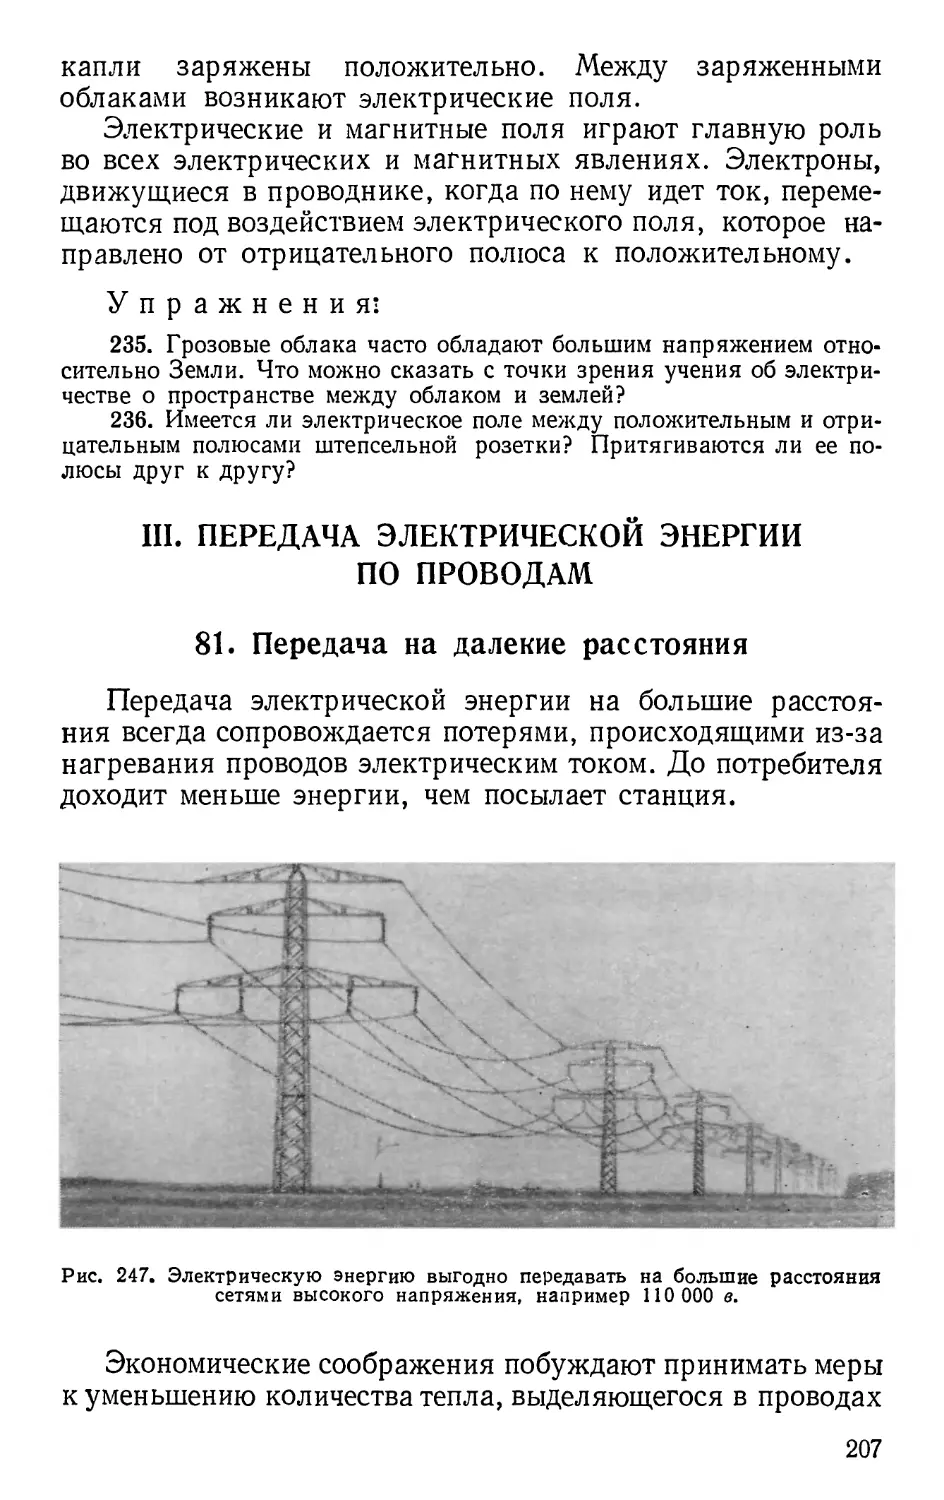 III. Передача электрической энергии по проводам